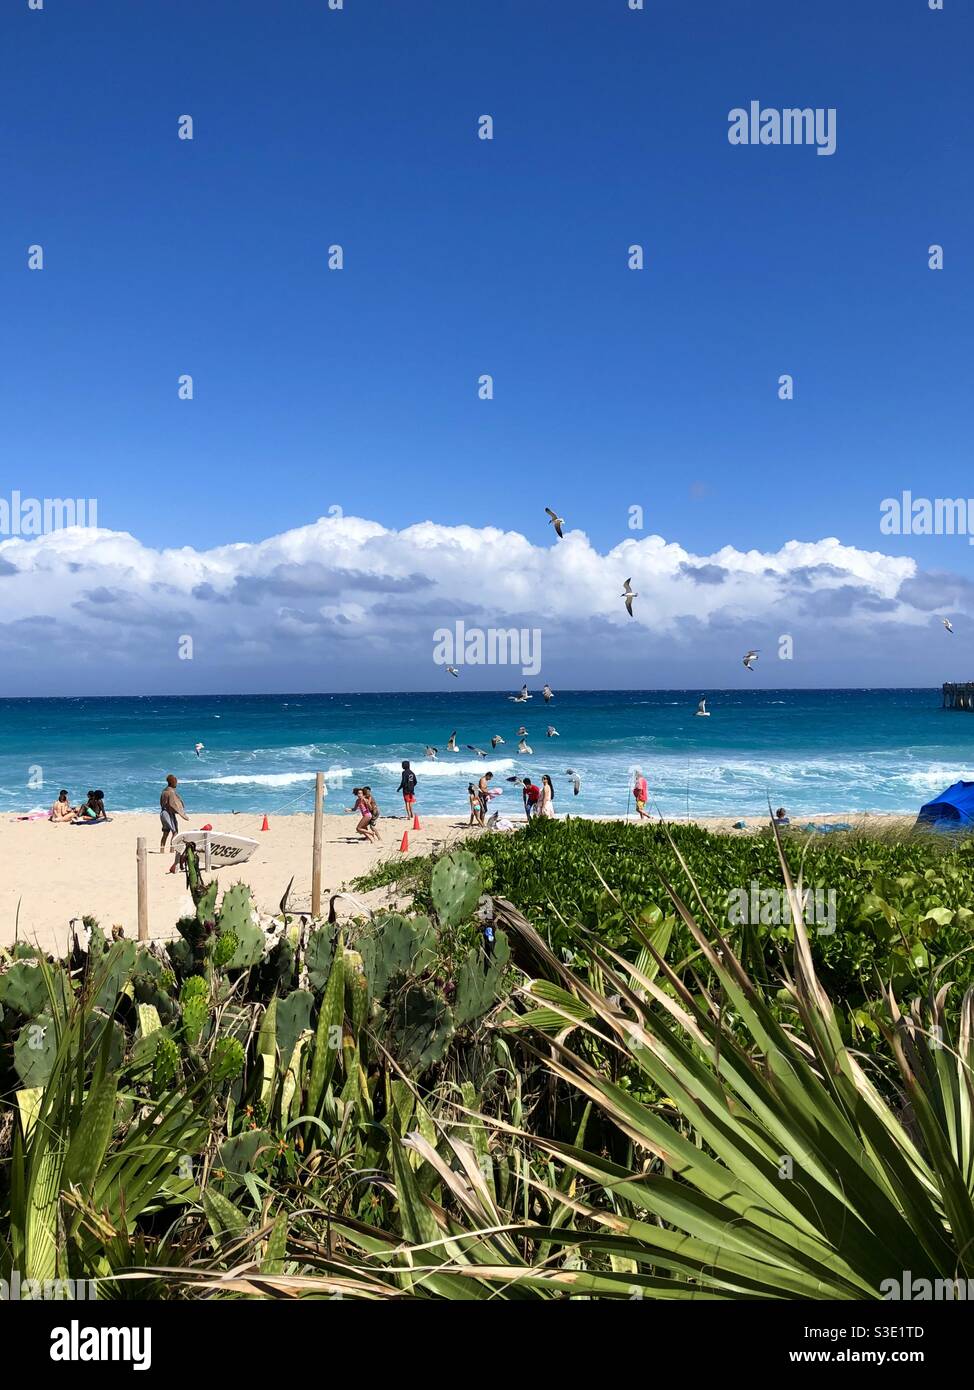 Schöner Tag am Lake Worth Beach, Florida, mit Menschen am Meer und einem Schwarm von Möwen über uns. Stockfoto